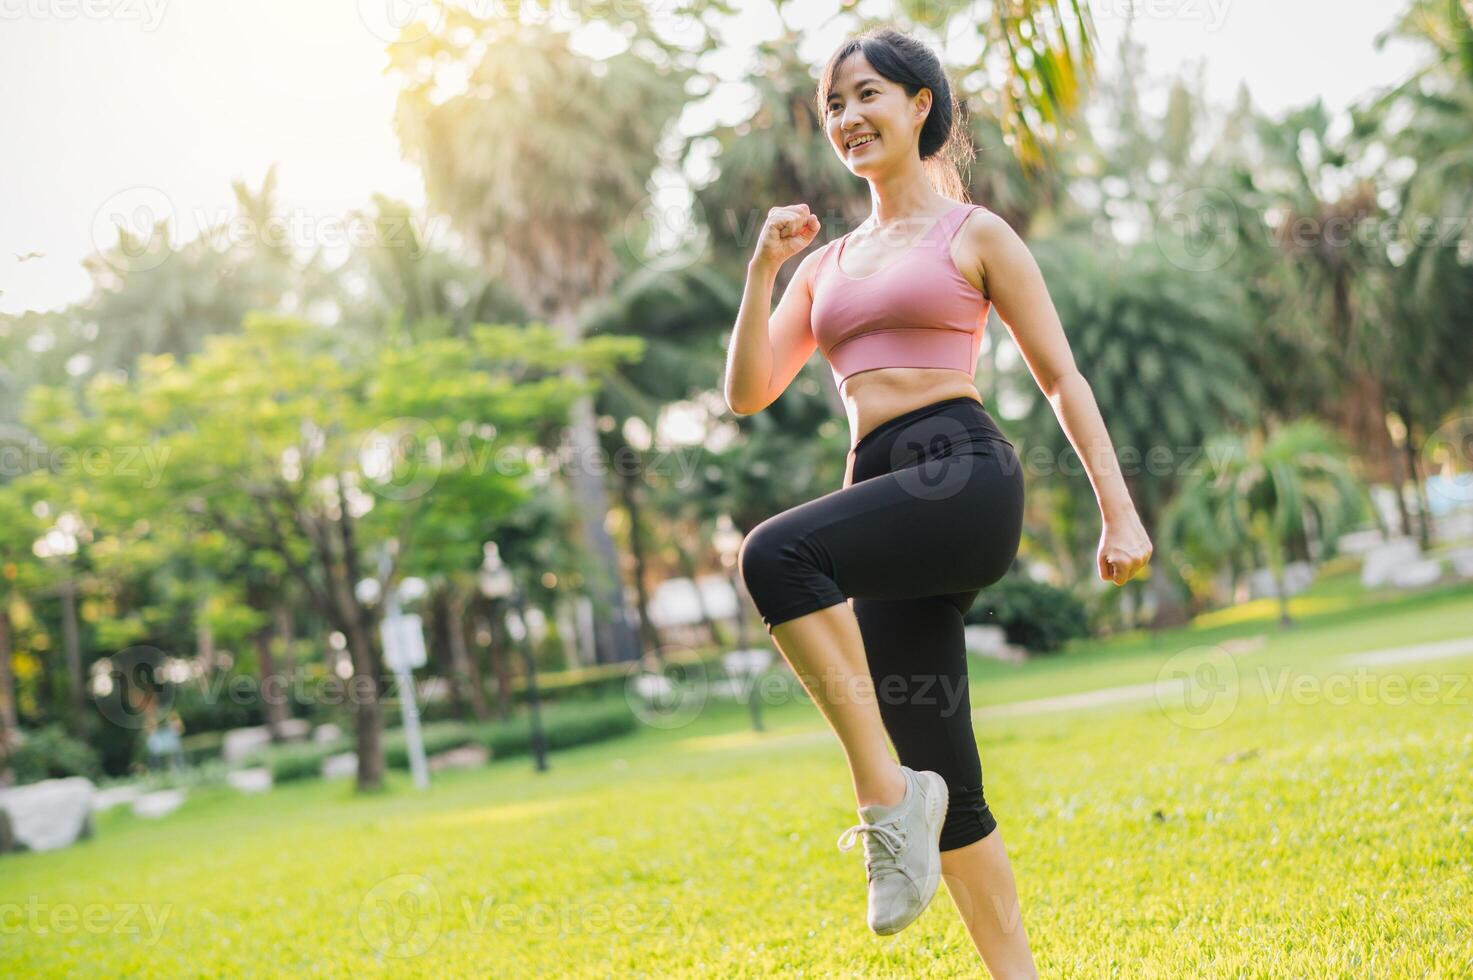 sumergirse tú mismo en concepto de bienestar y bienestar. ajuste asiático mujer en 30, vistiendo rosado ropa de deporte, hacer ejercicio en público parque a puesta de sol. inspirador monitor de un sano al aire libre estilo de vida. foto